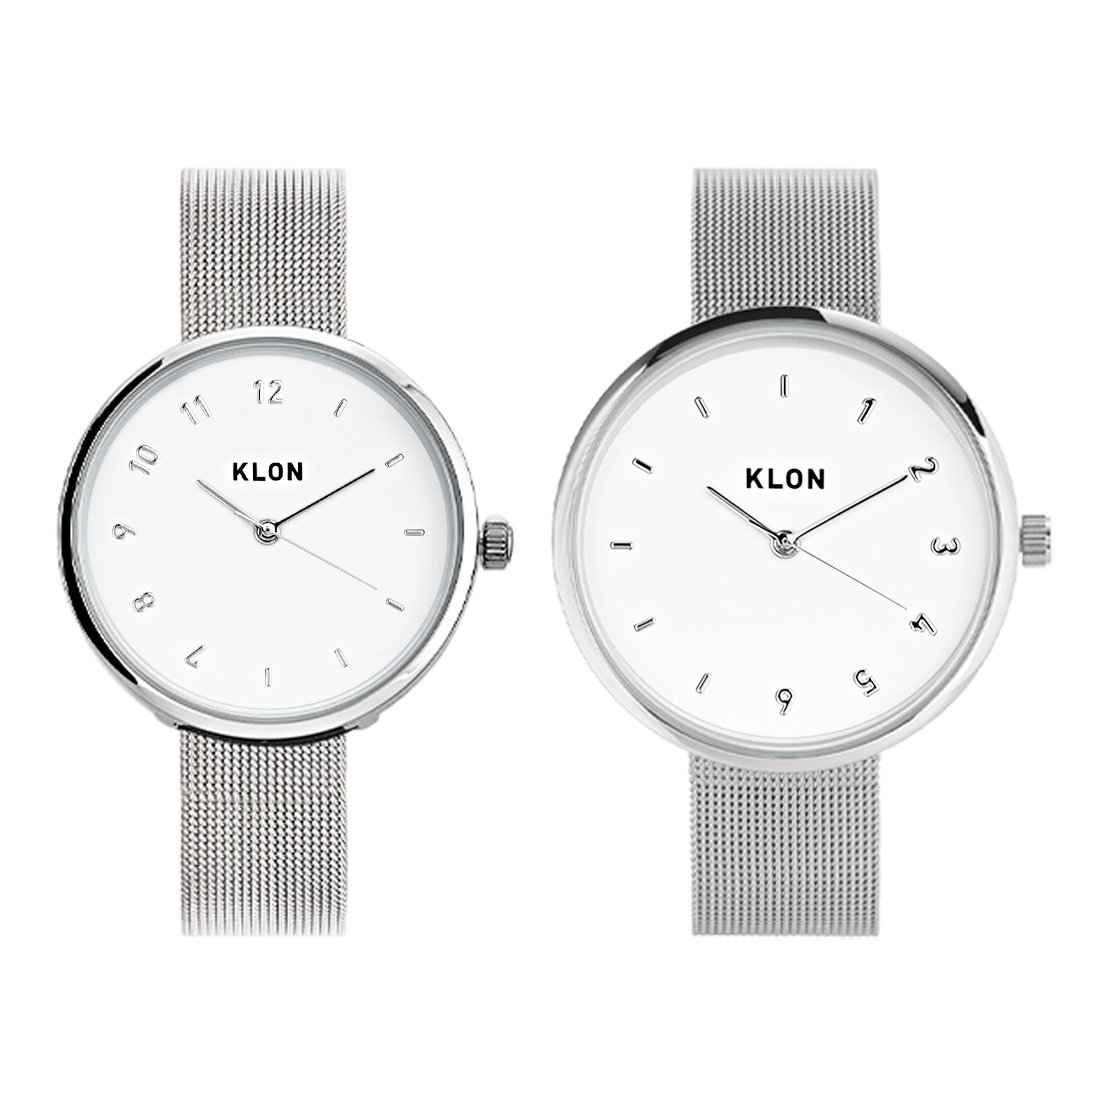 【組合せ商品】KLON CONNECTION ELFIN -SILVER MESH-(FIRST:38mm×LATTER:33mm) カジュアル 腕時計